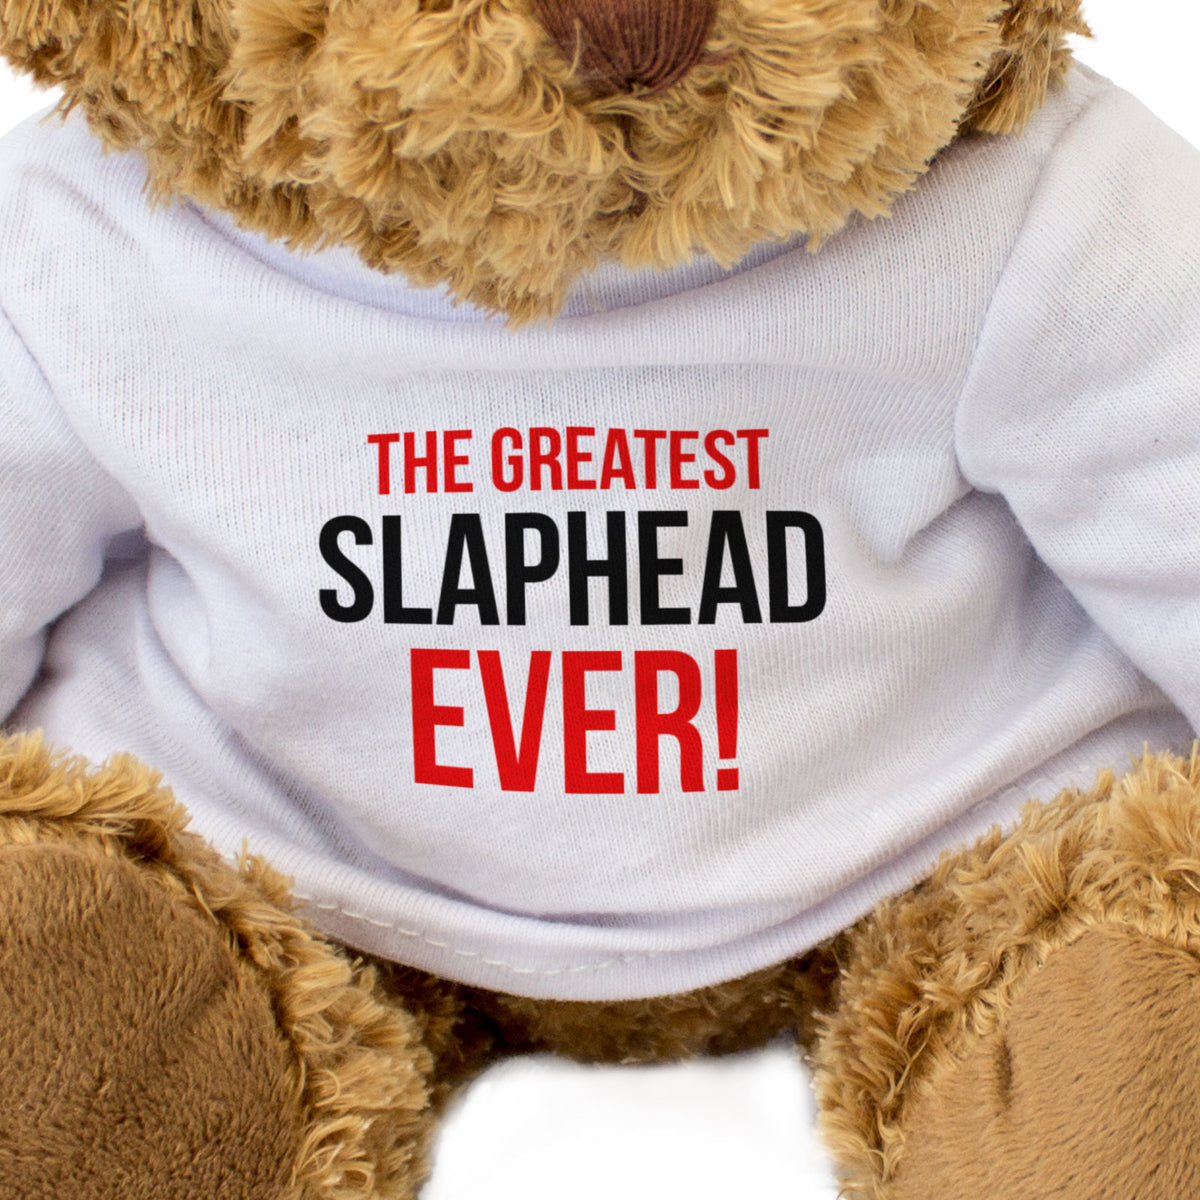 The Greatest Slaphead Ever - Teddy Bear